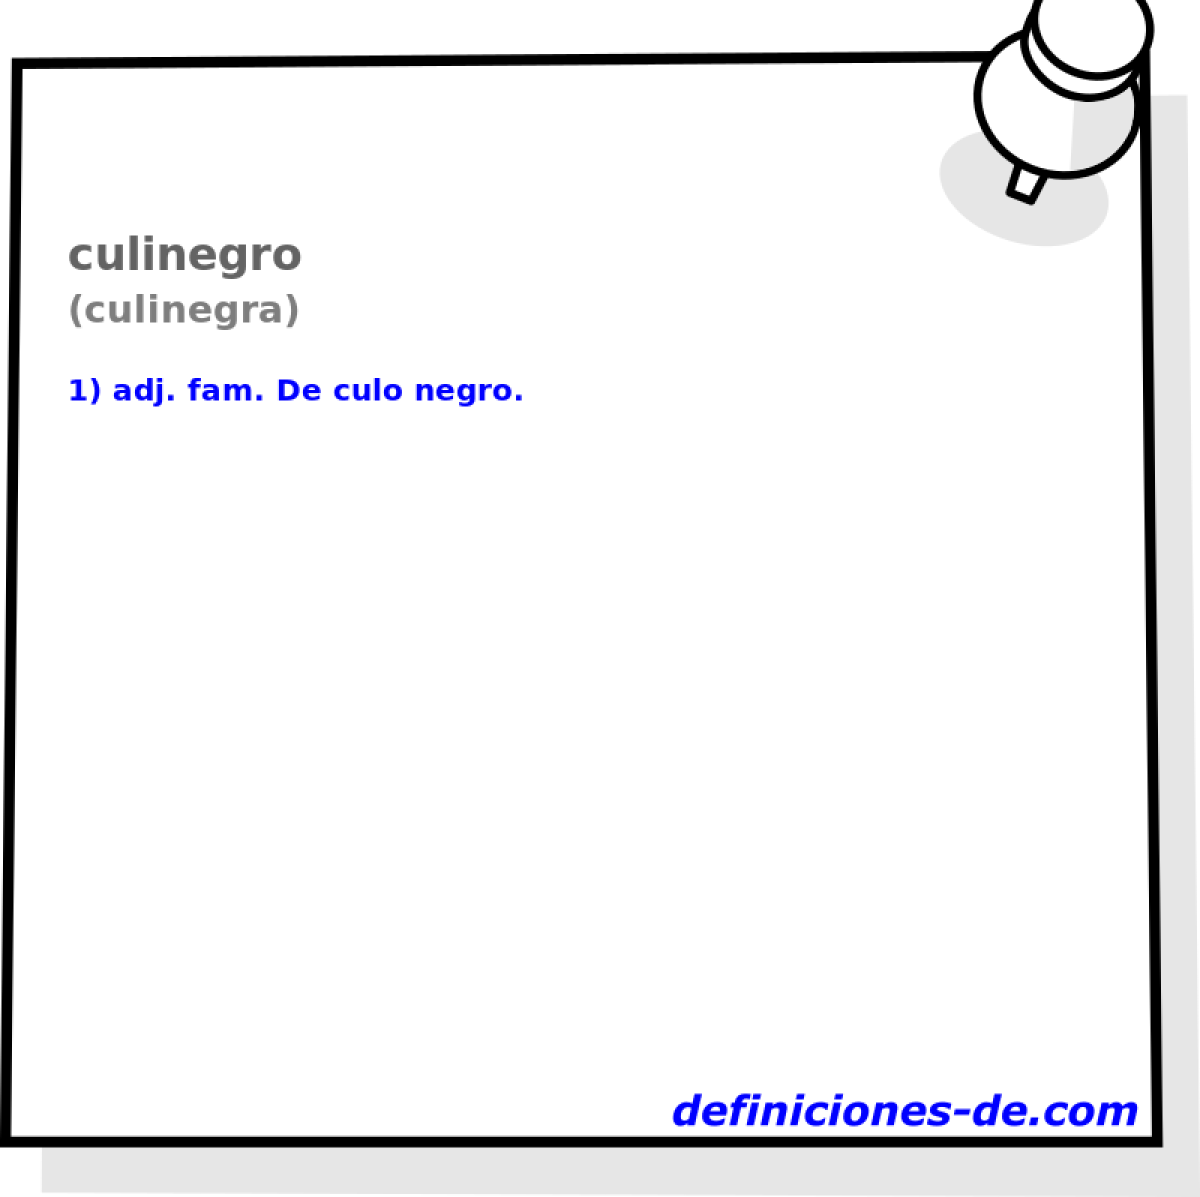 culinegro (culinegra)